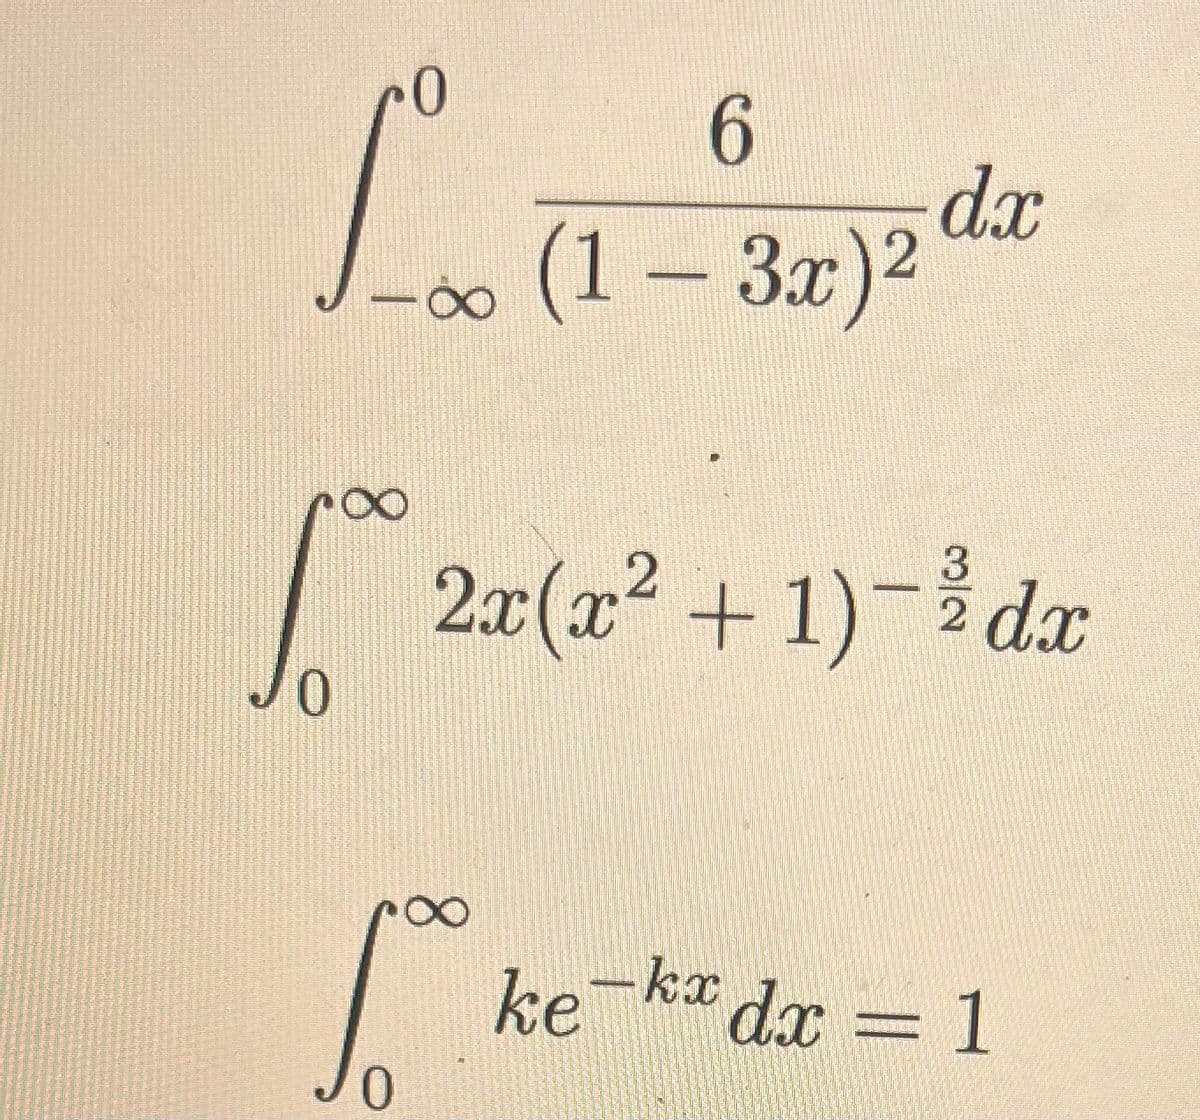 0
6
[…1
(1 – 3x)²
100 ²
JO
0
dx
2x(x² +1)-1dx
-kxdx = 1